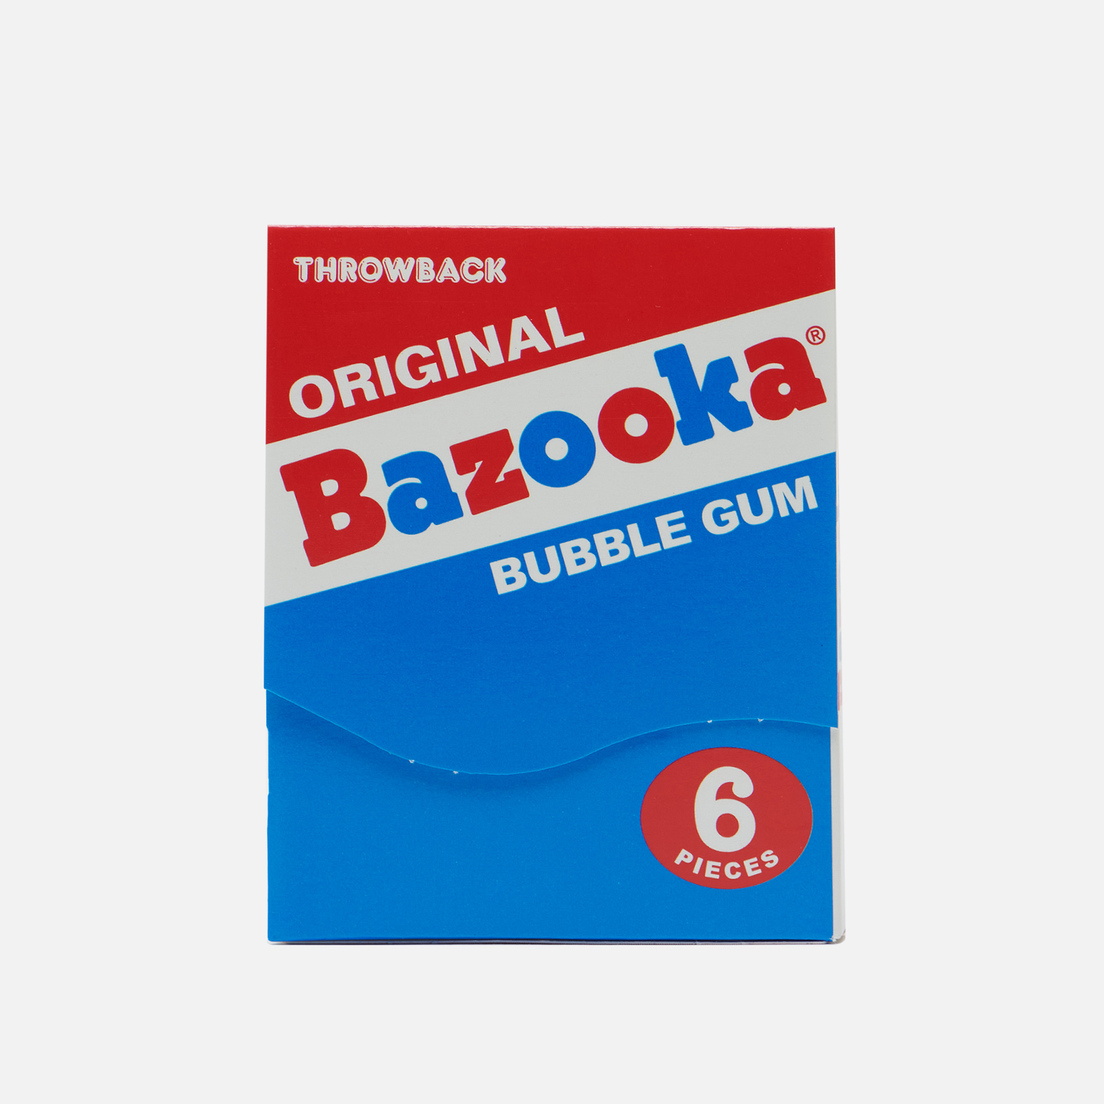 Throwback Жевательная резинка Bazooka Old School Original